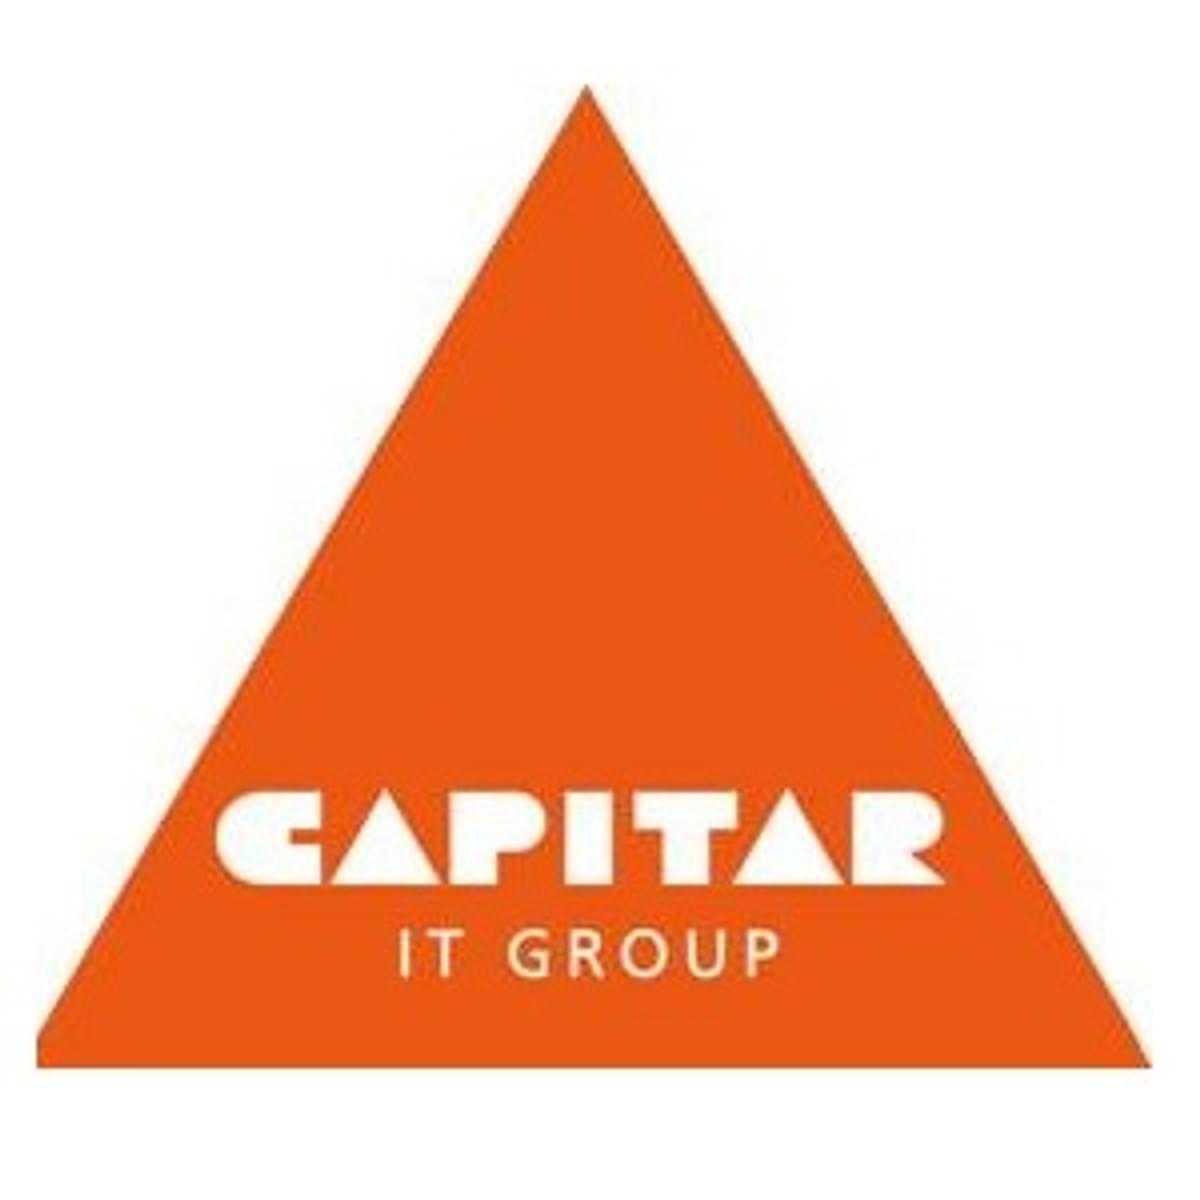 Capitar IT Group is MSP partner van Micro Focus image